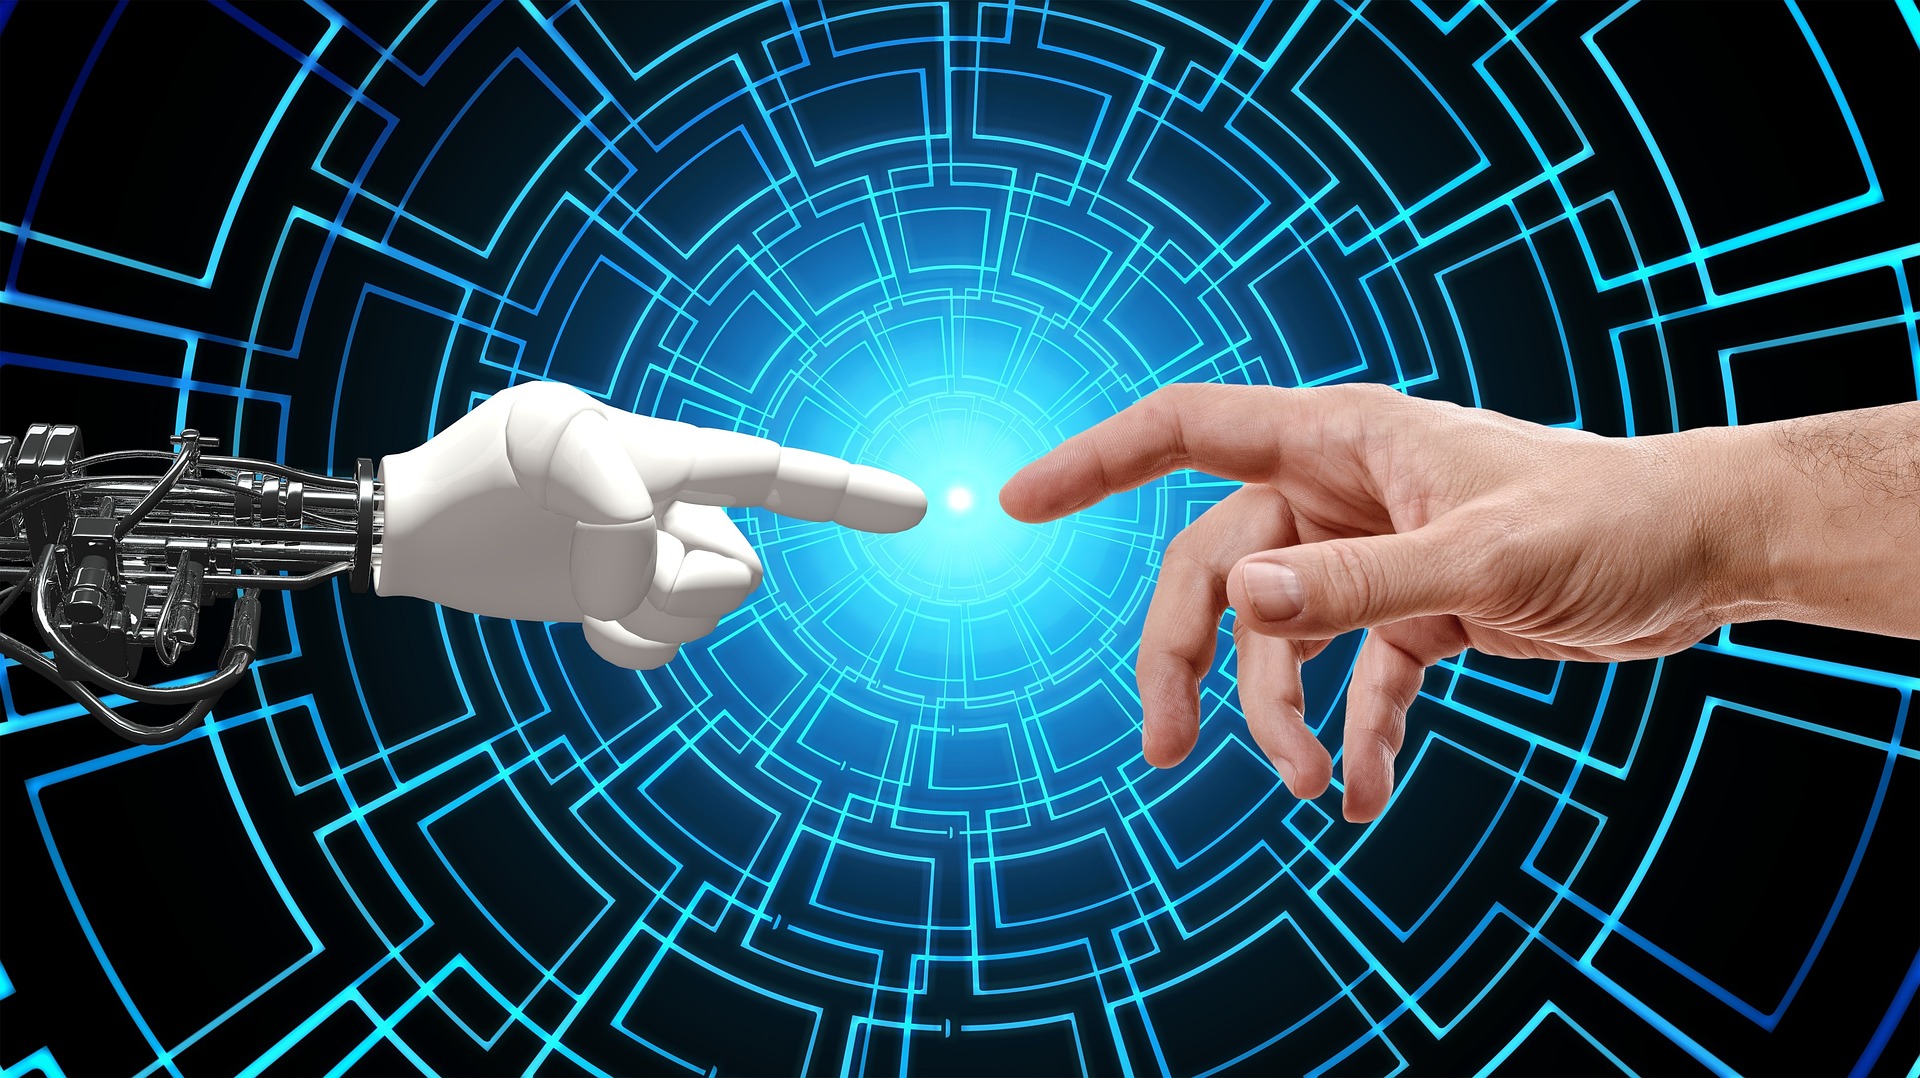 Bill Gates aseguró que la IA será como "una amiga cercana" en los próximos años